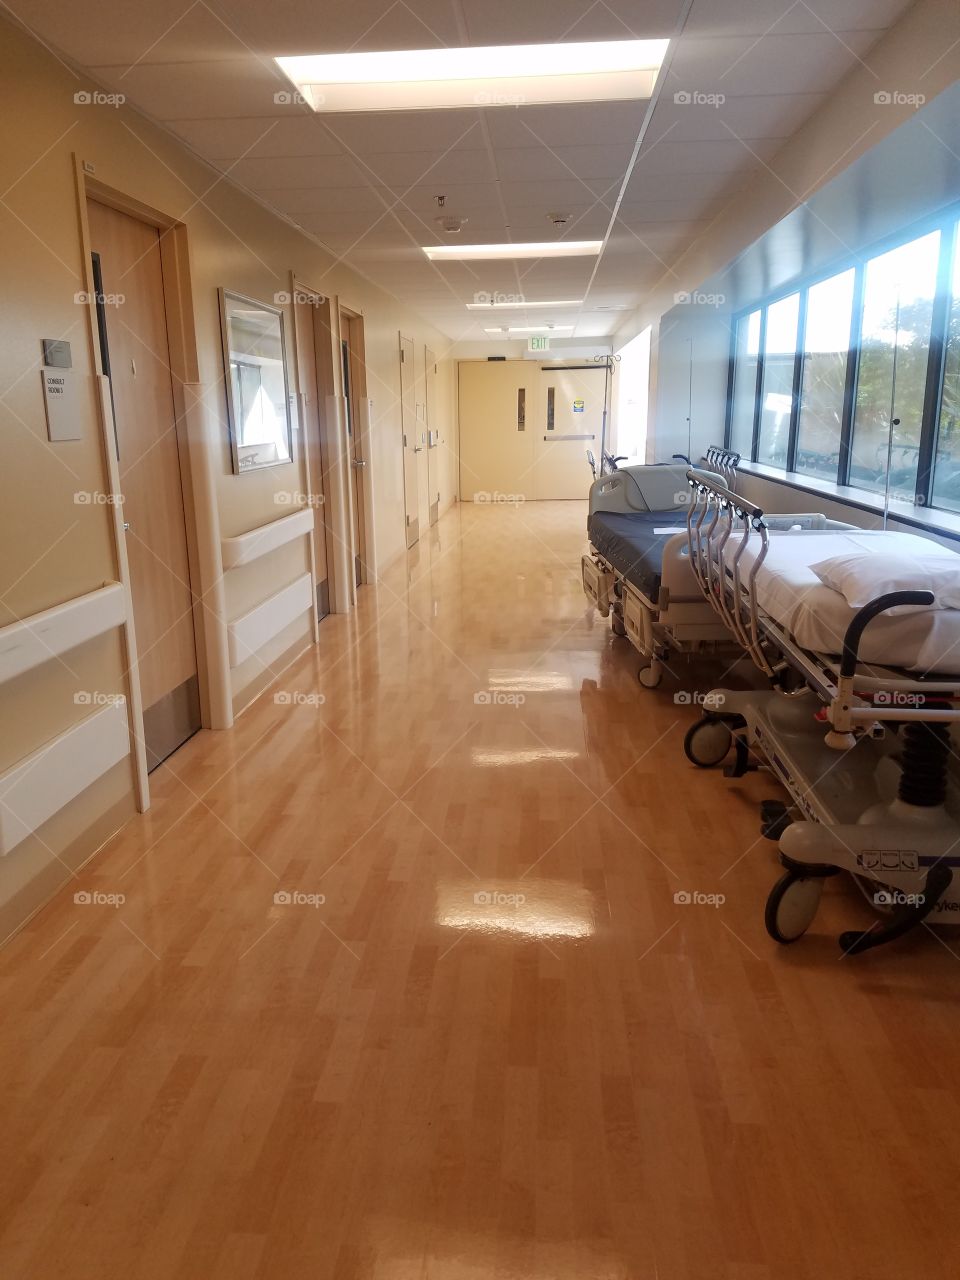 the morgue hallway